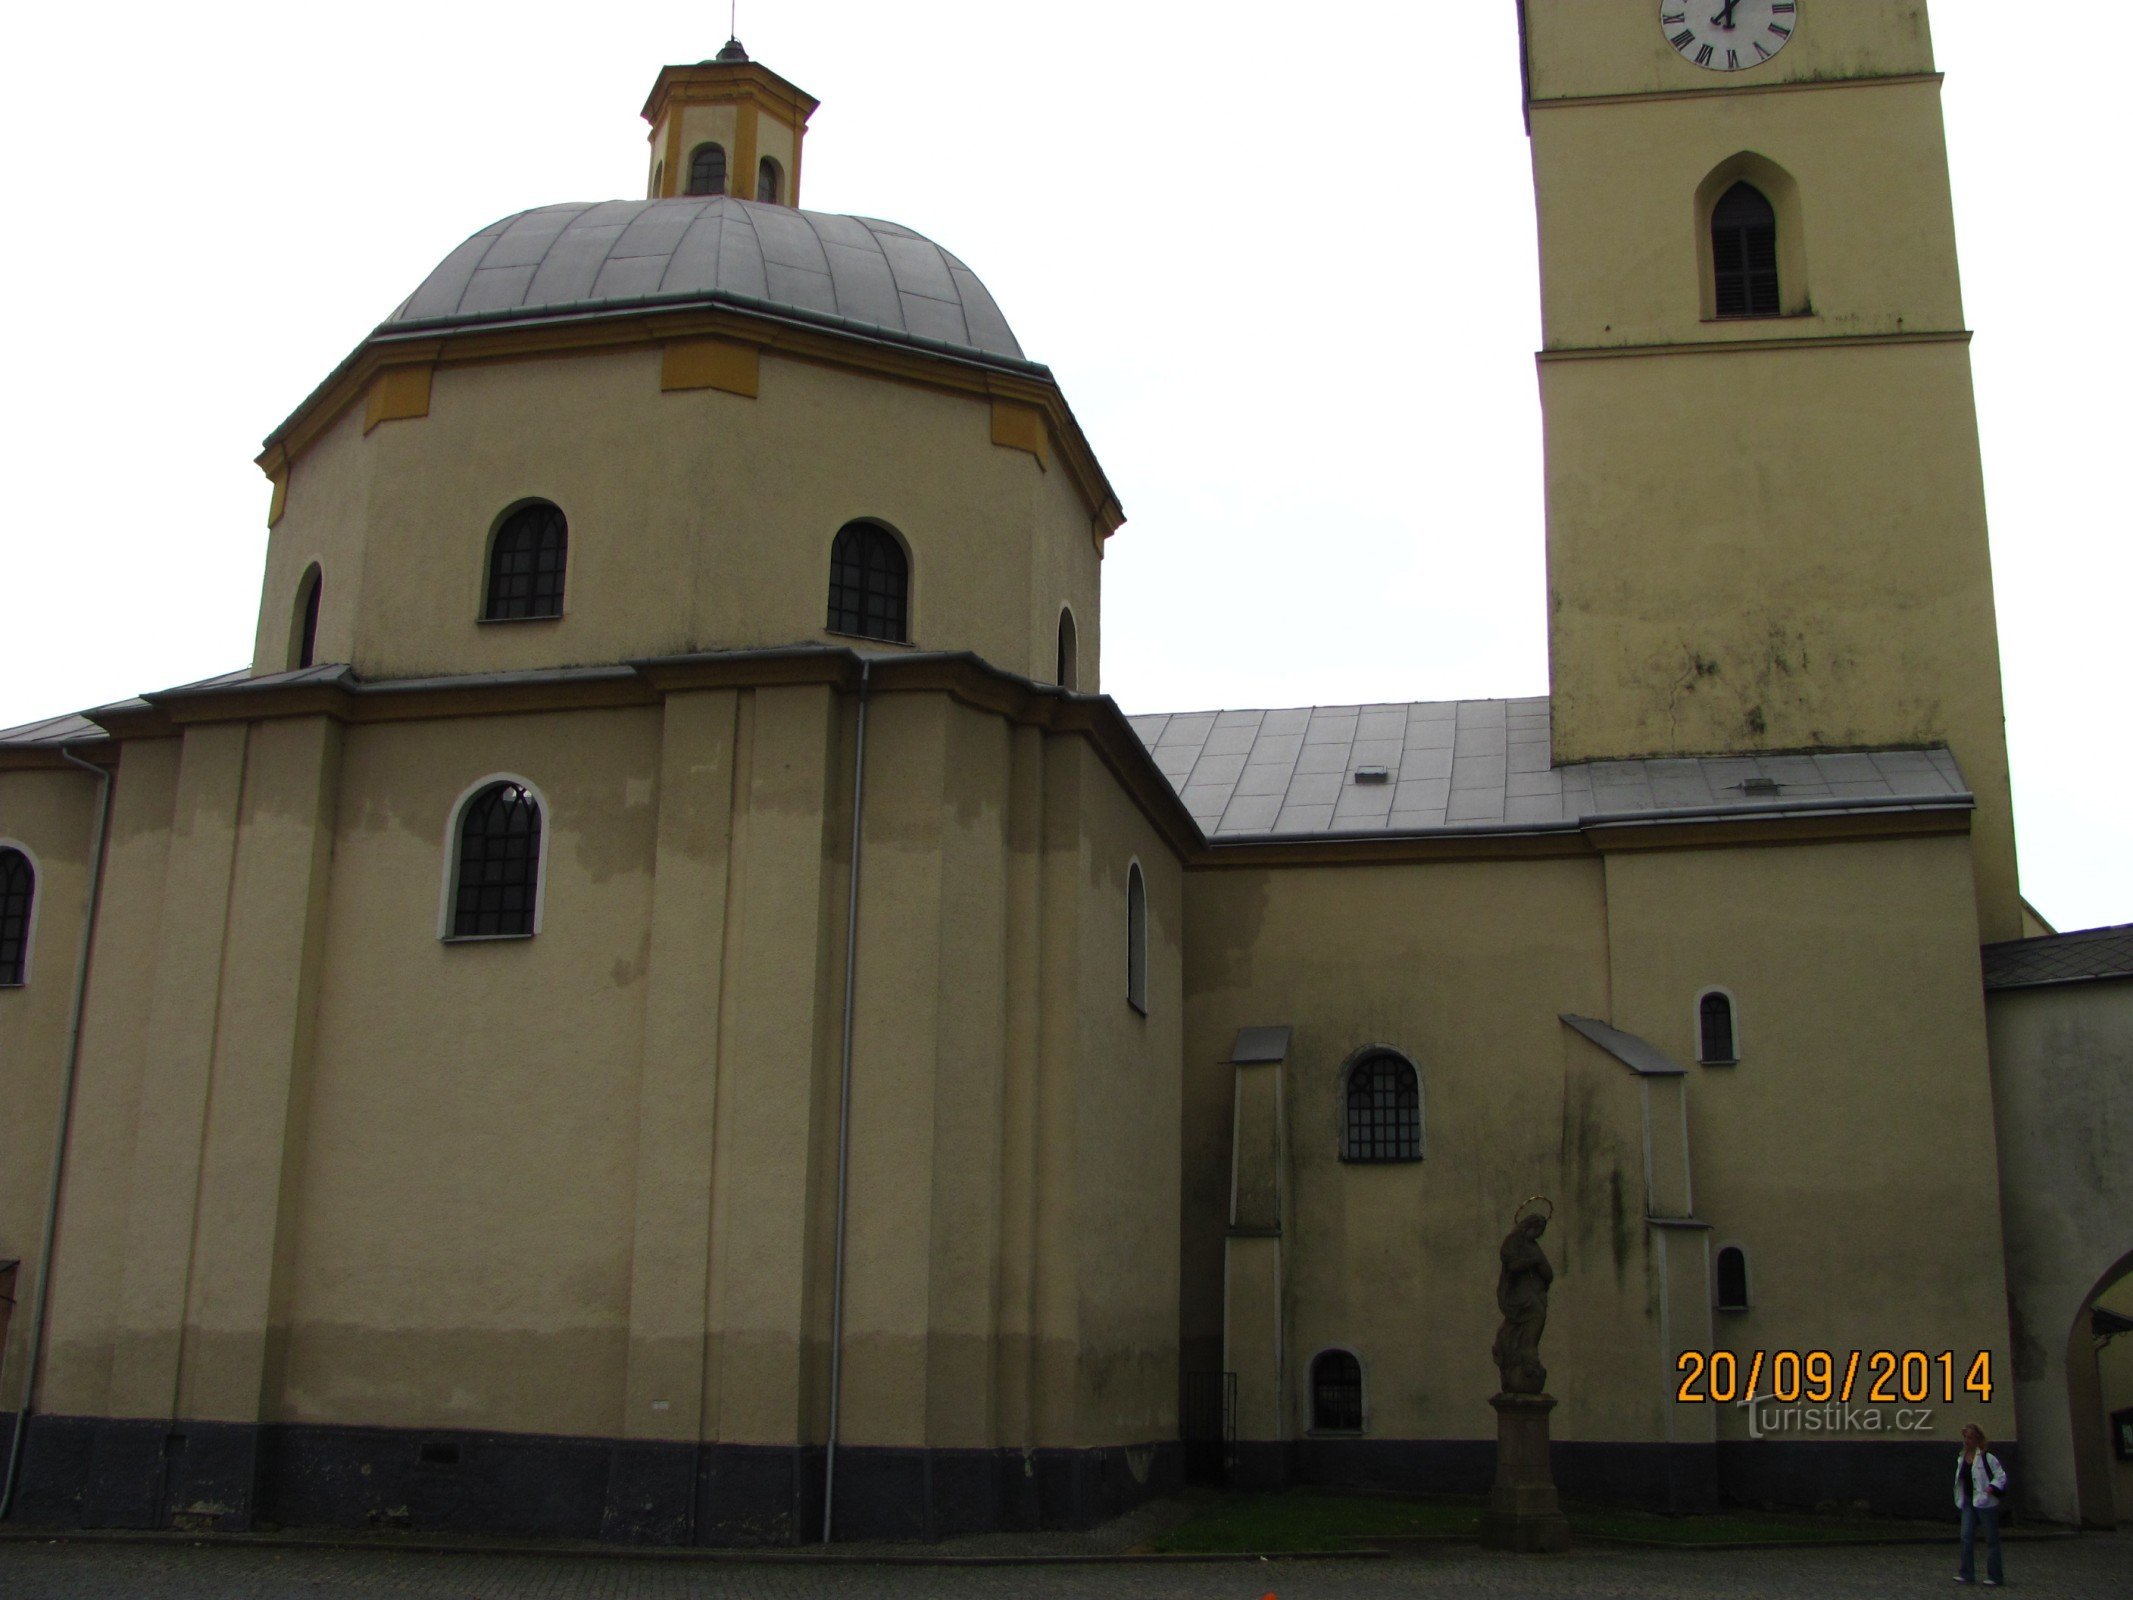 Church of St. Kateřiny in Klimkovice